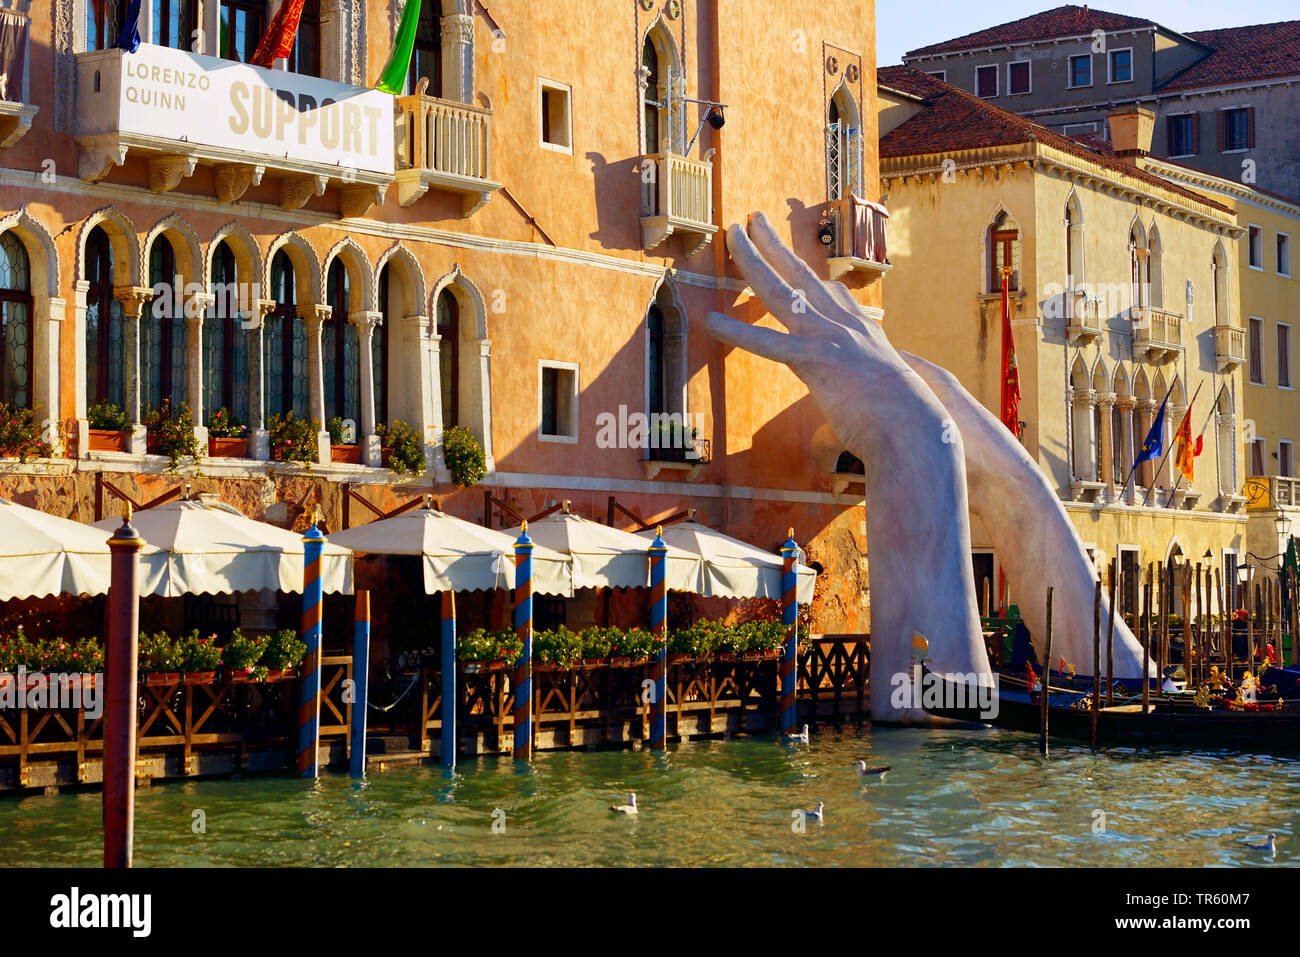 Soutien de la sculpture monumentale, qui sous-tend la main un hôtel à Venise, Italie, Venise Banque D'Images